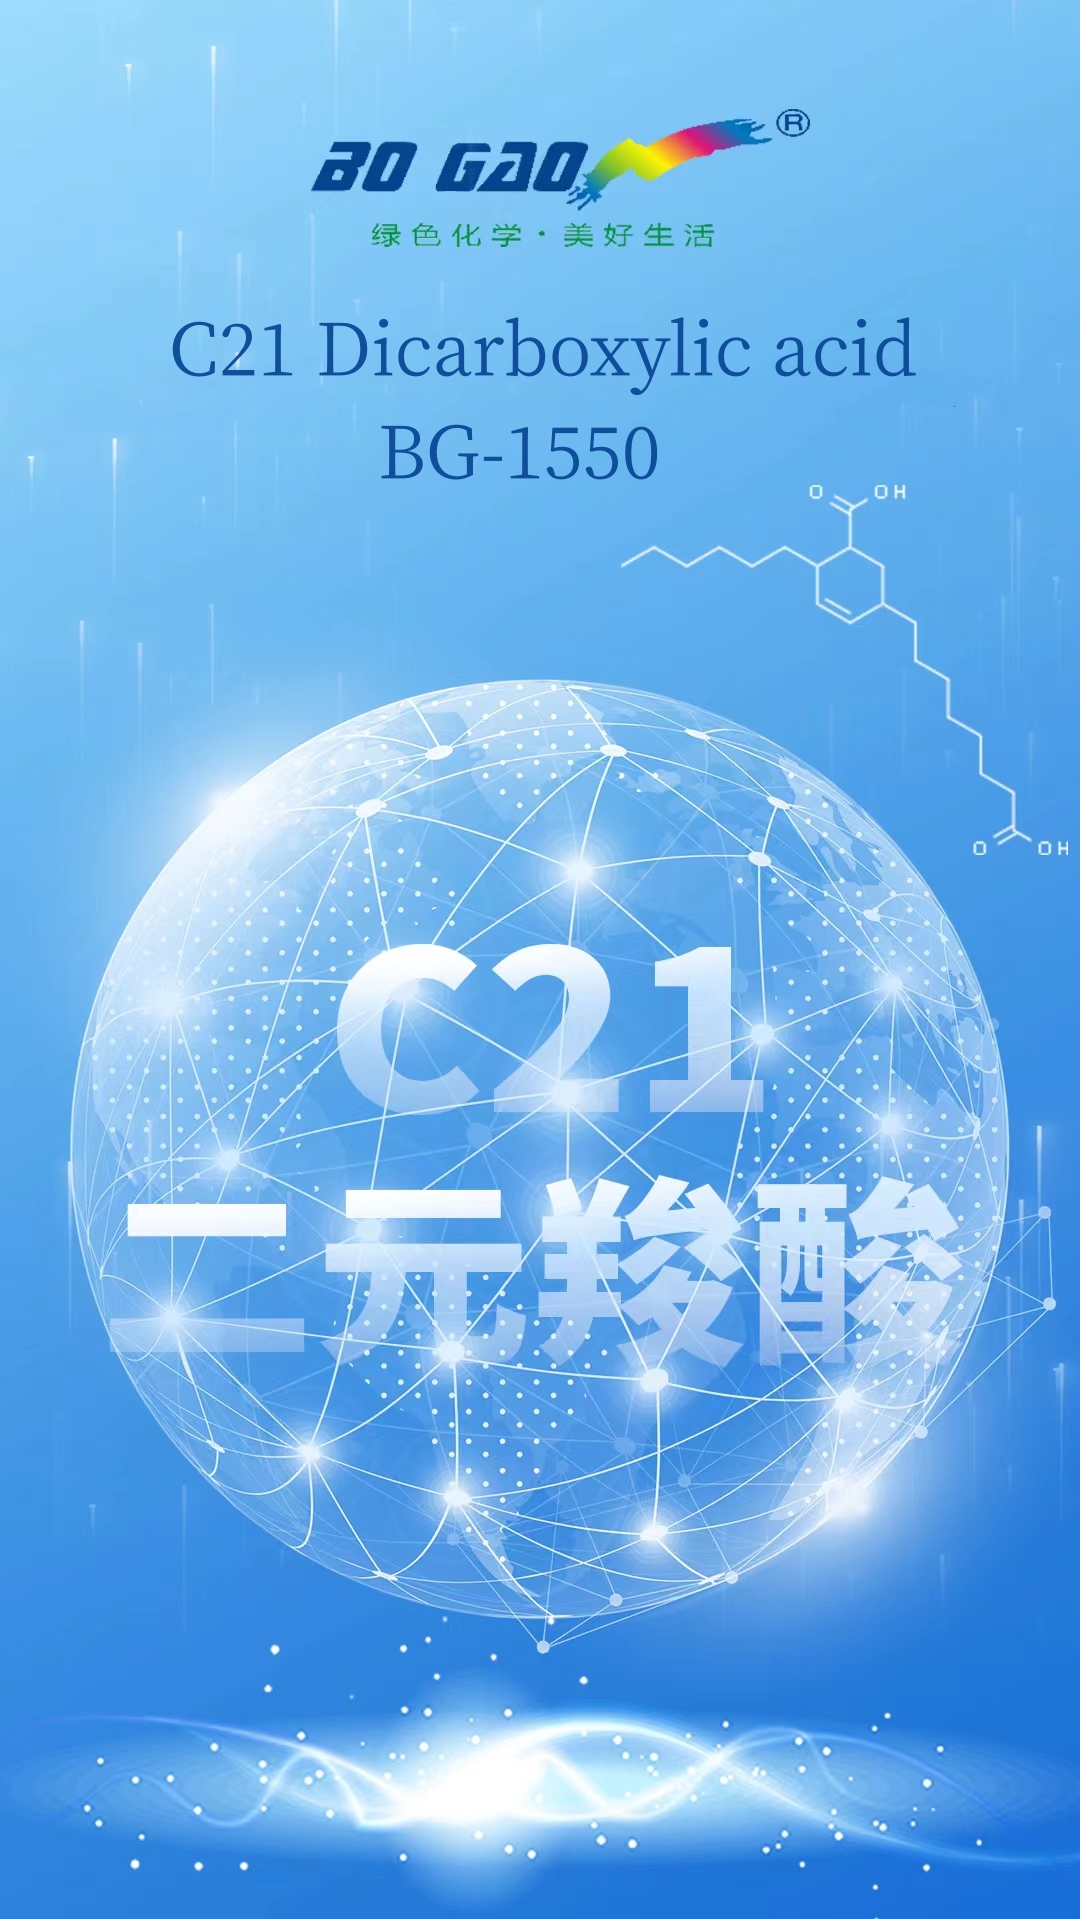 Hoʻokuʻu ʻo BoGao i ka noi multifunctional-C21 Dicarboxylic acid/BG-1550